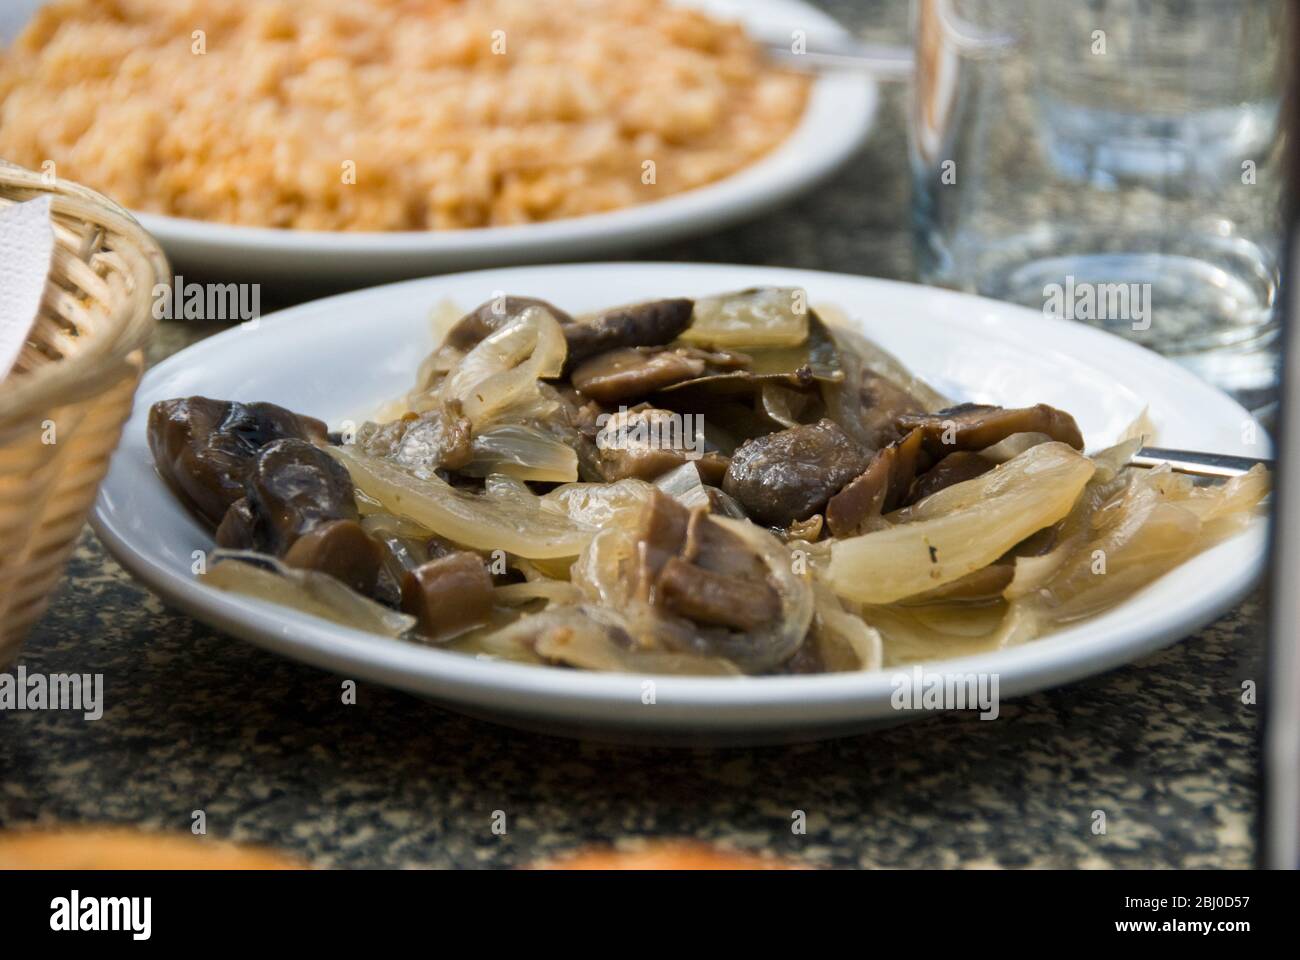 Pilze mit Knoblauch und Zwiebeln als Teil der Meze in griechisch zypriotischen Restaurant in den Bergen in Südzypern gekocht - Stockfoto